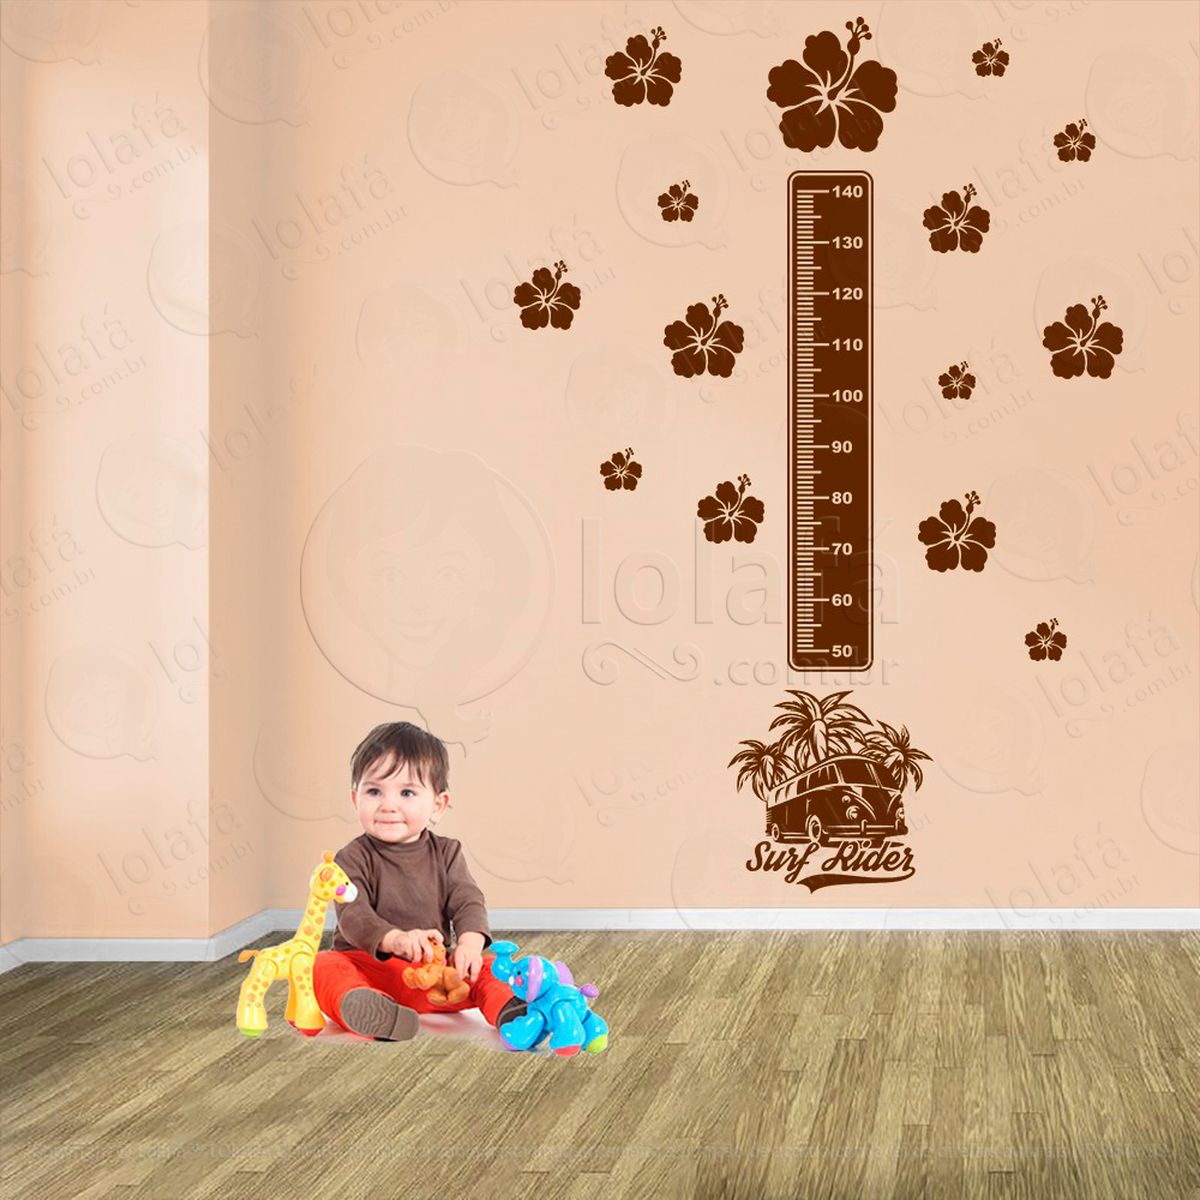 surf e flores adesivo régua de crescimento infantil, medidor de altura para quarto, porta e parede - mod:432